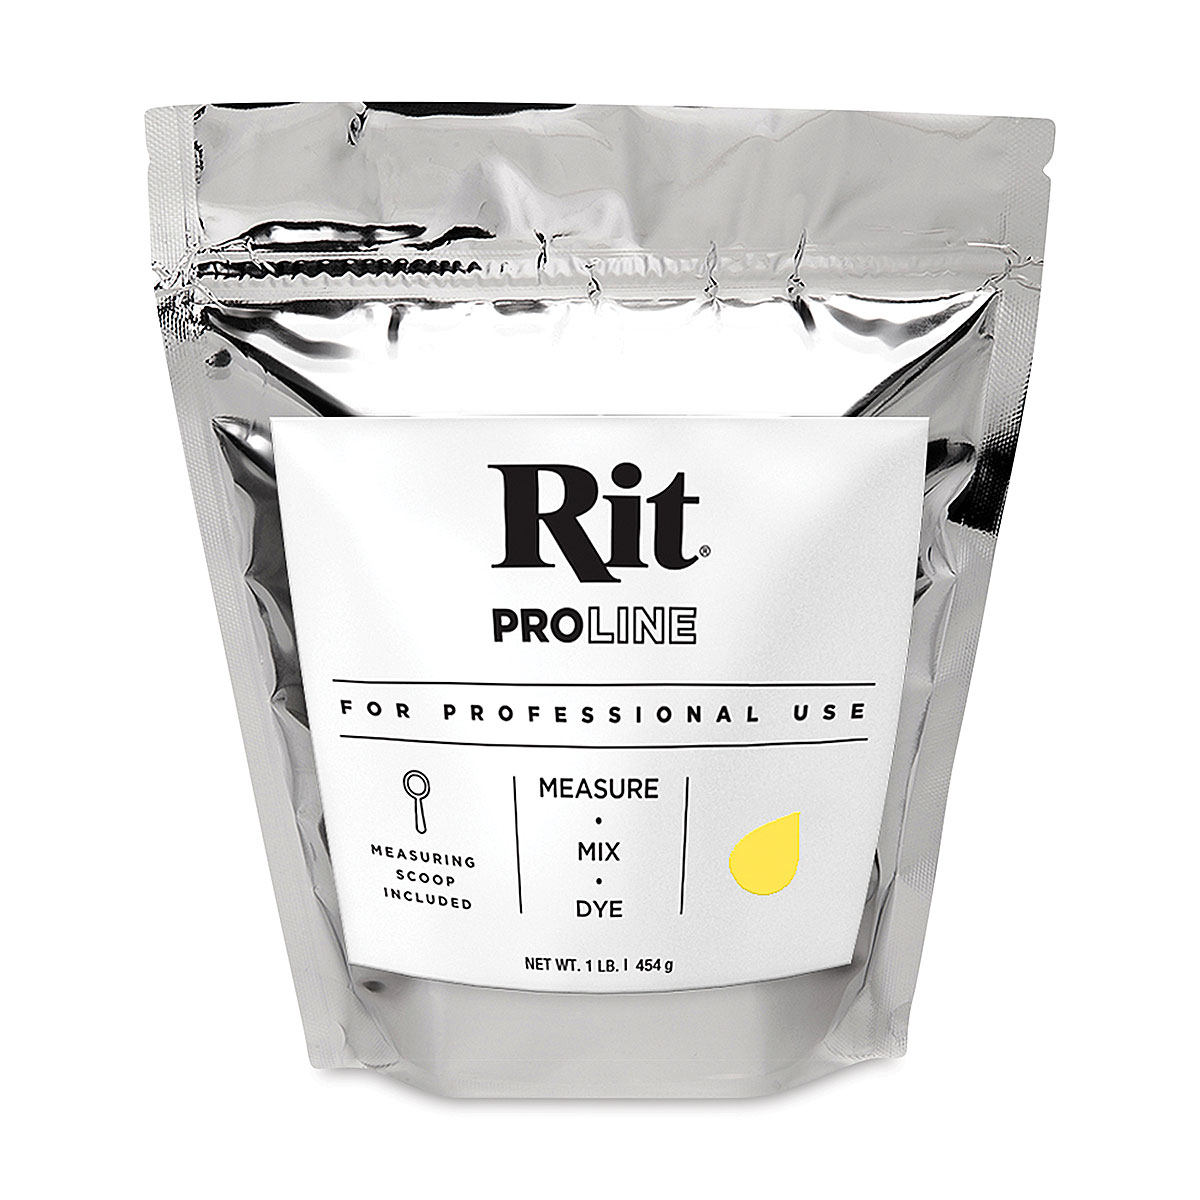 Rit ProLine Powder Dye - Lemon Yellow, 1 lb